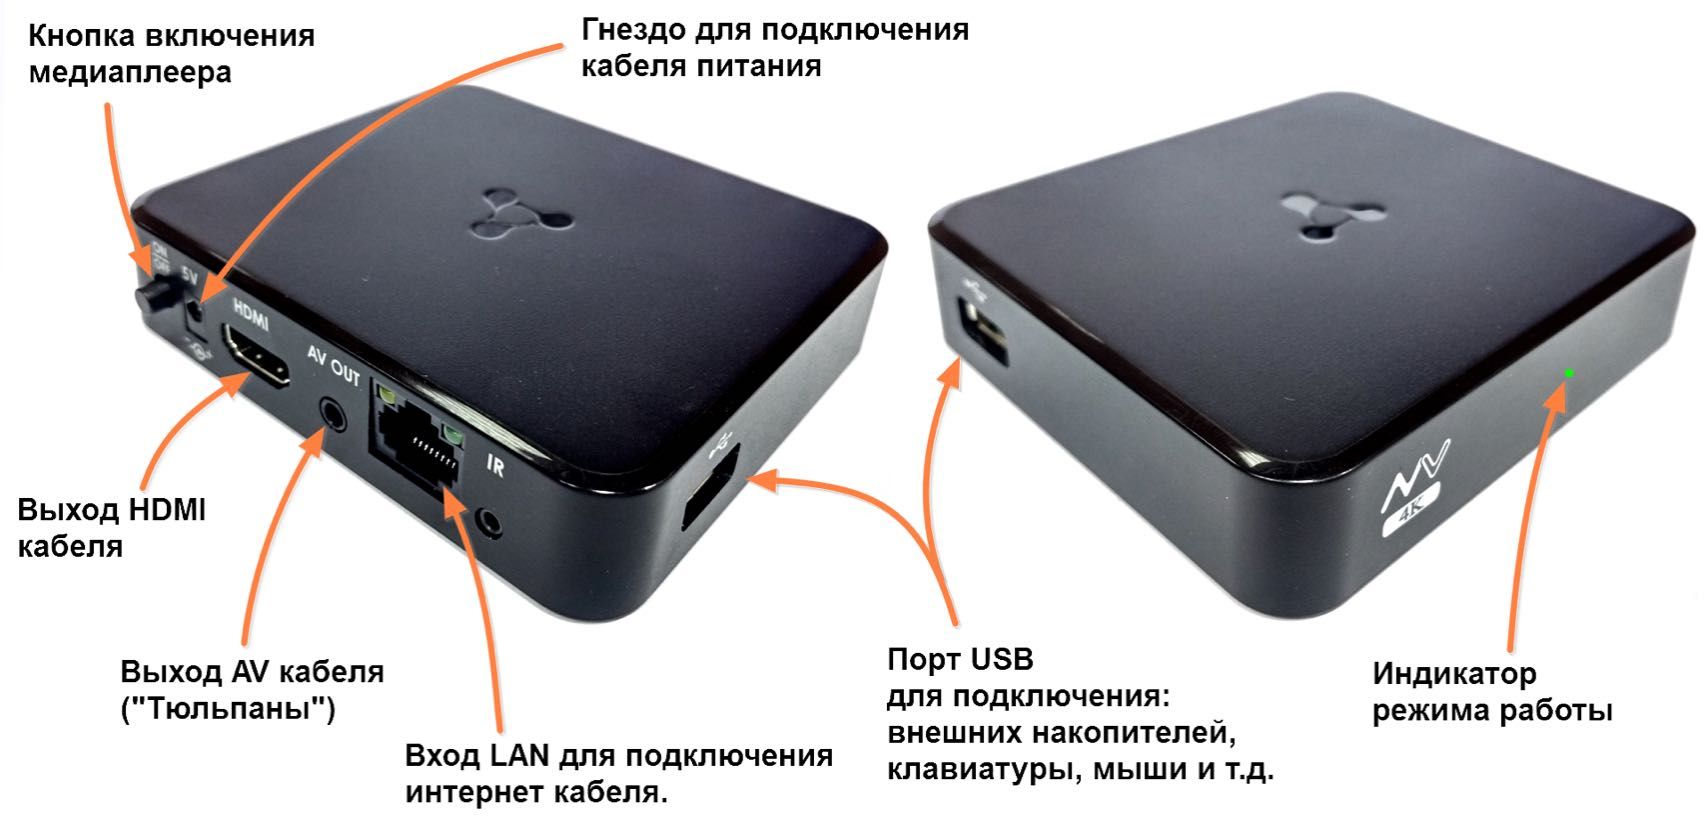 Оригинальный Блок Питания 5,3 V/2,5 A для ID TV приставки Казахтелеком